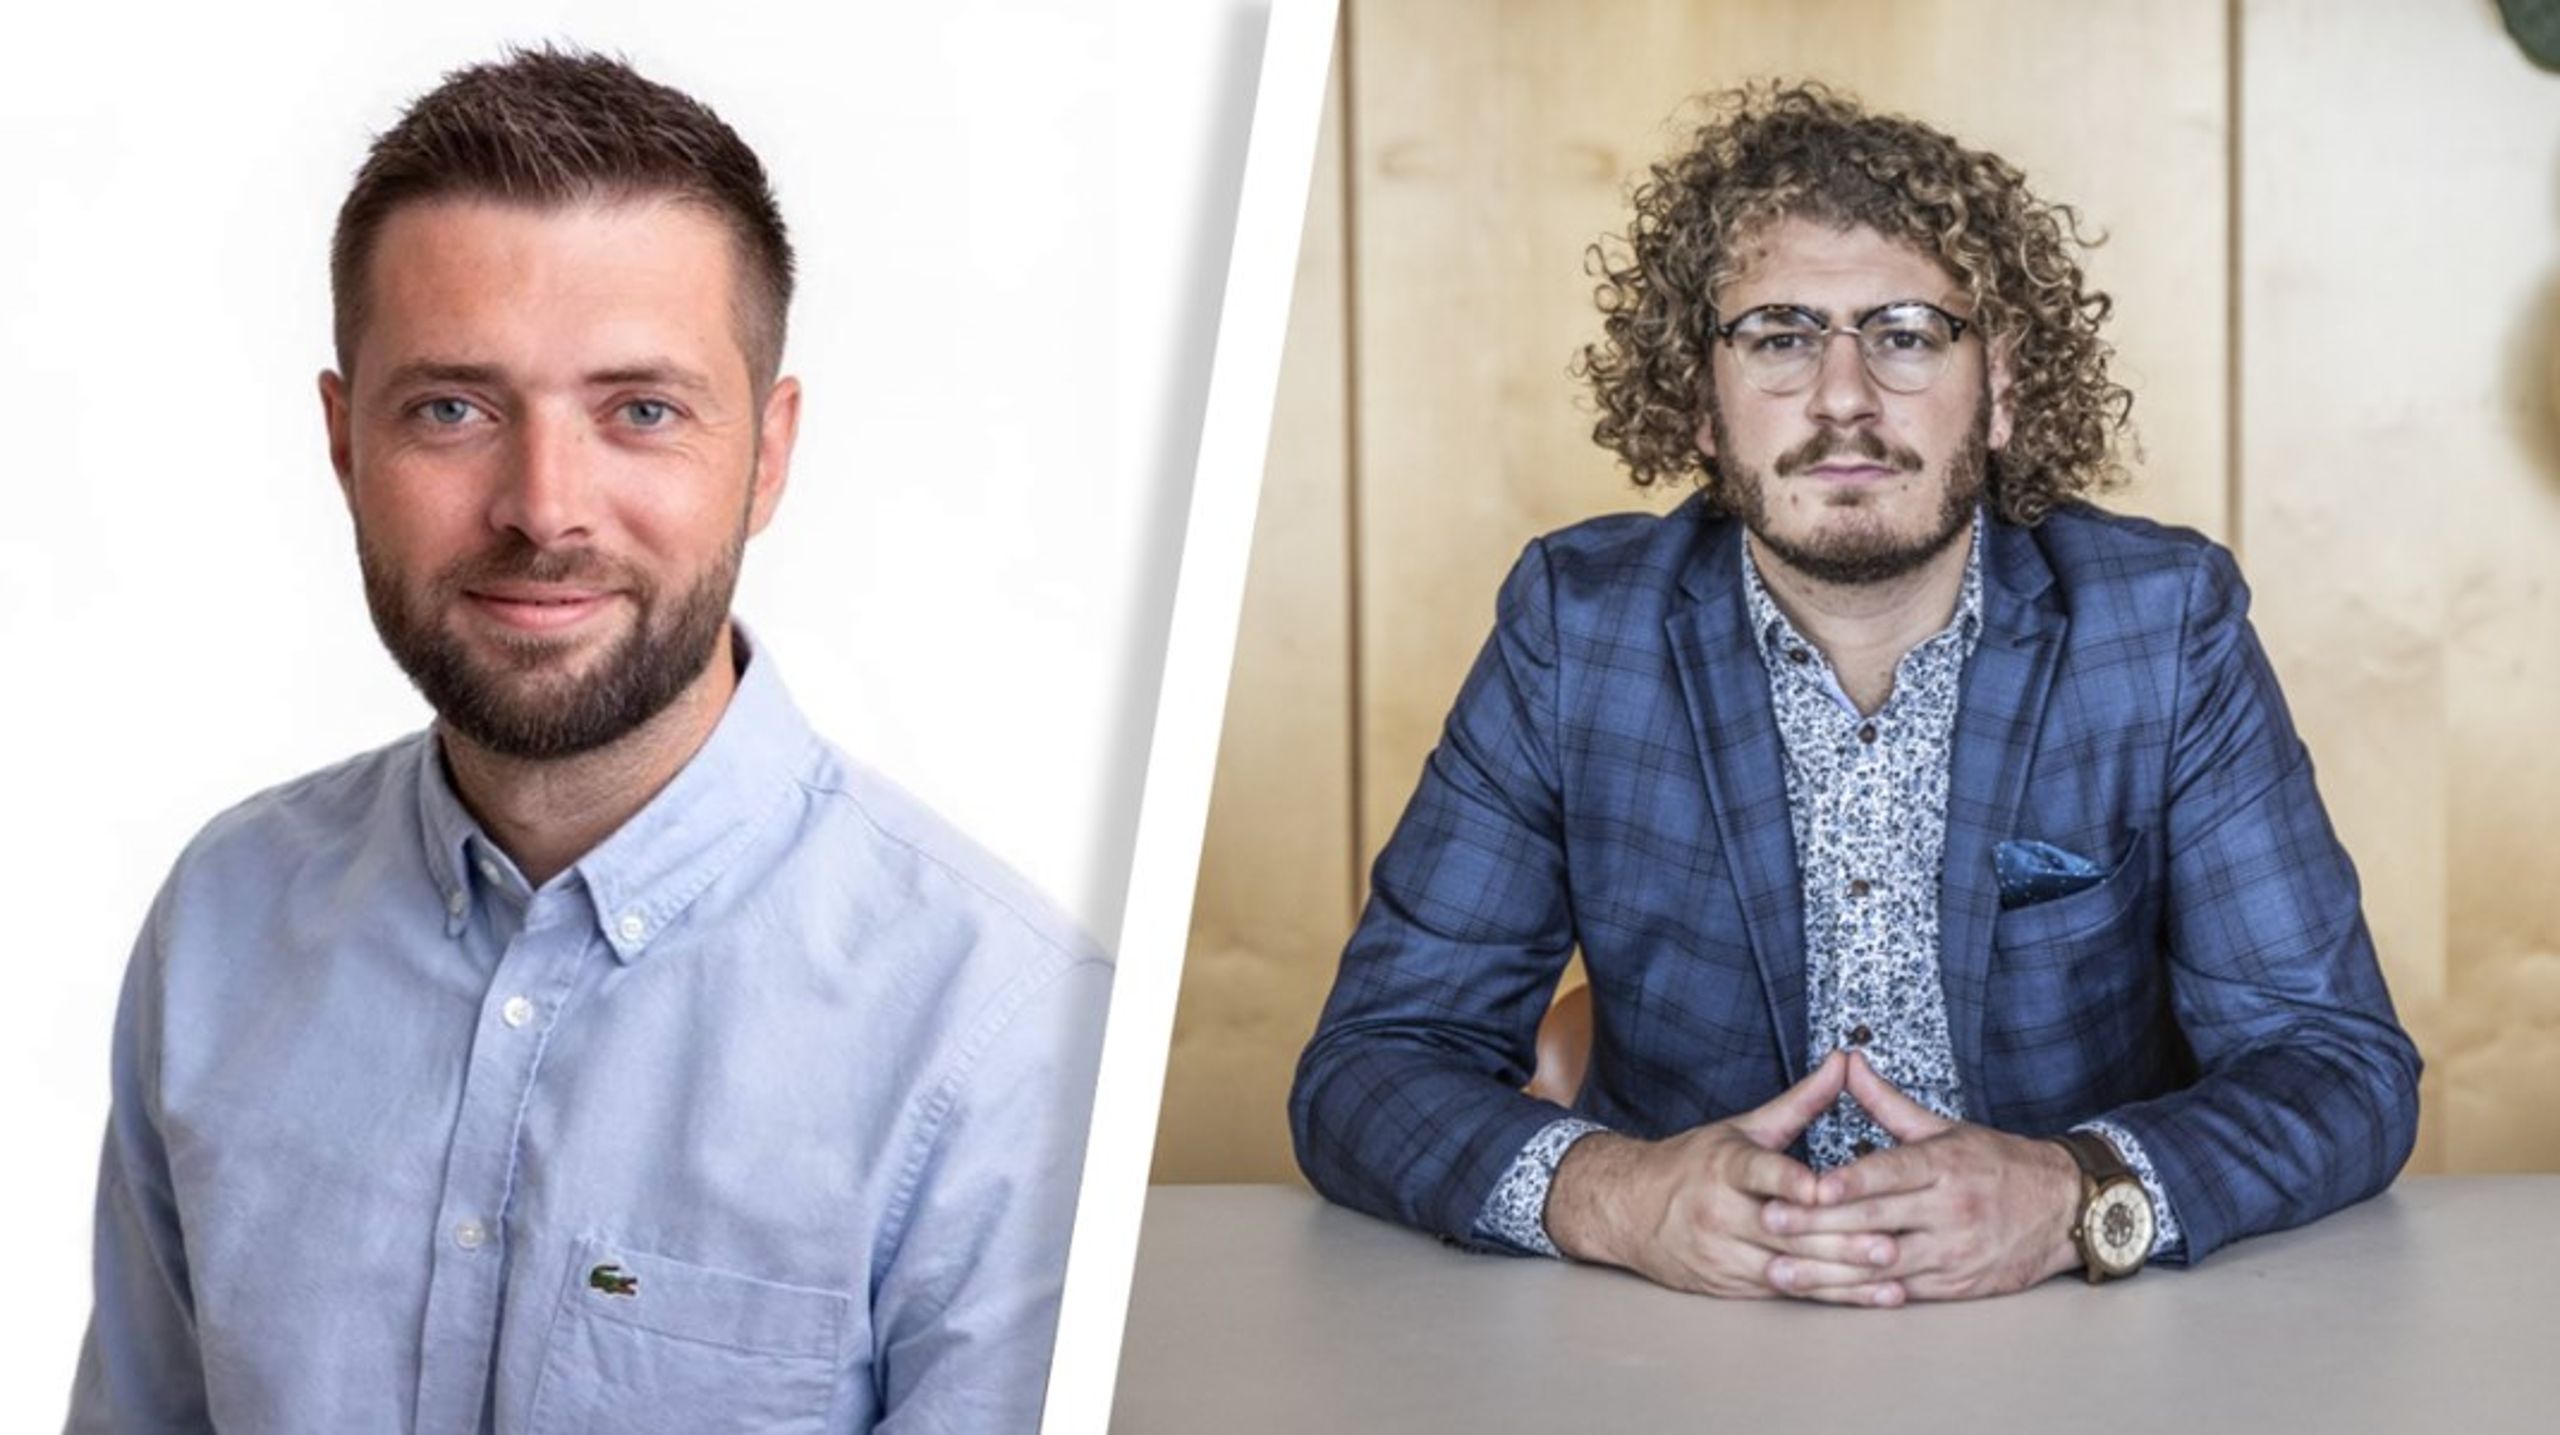 Socialdemokratiets 34-årige Kasper Damsgaard (til venstre) og Venstres 28-årige Piet Papageorge (til højre) er nye spidskandidater i Glostrup.